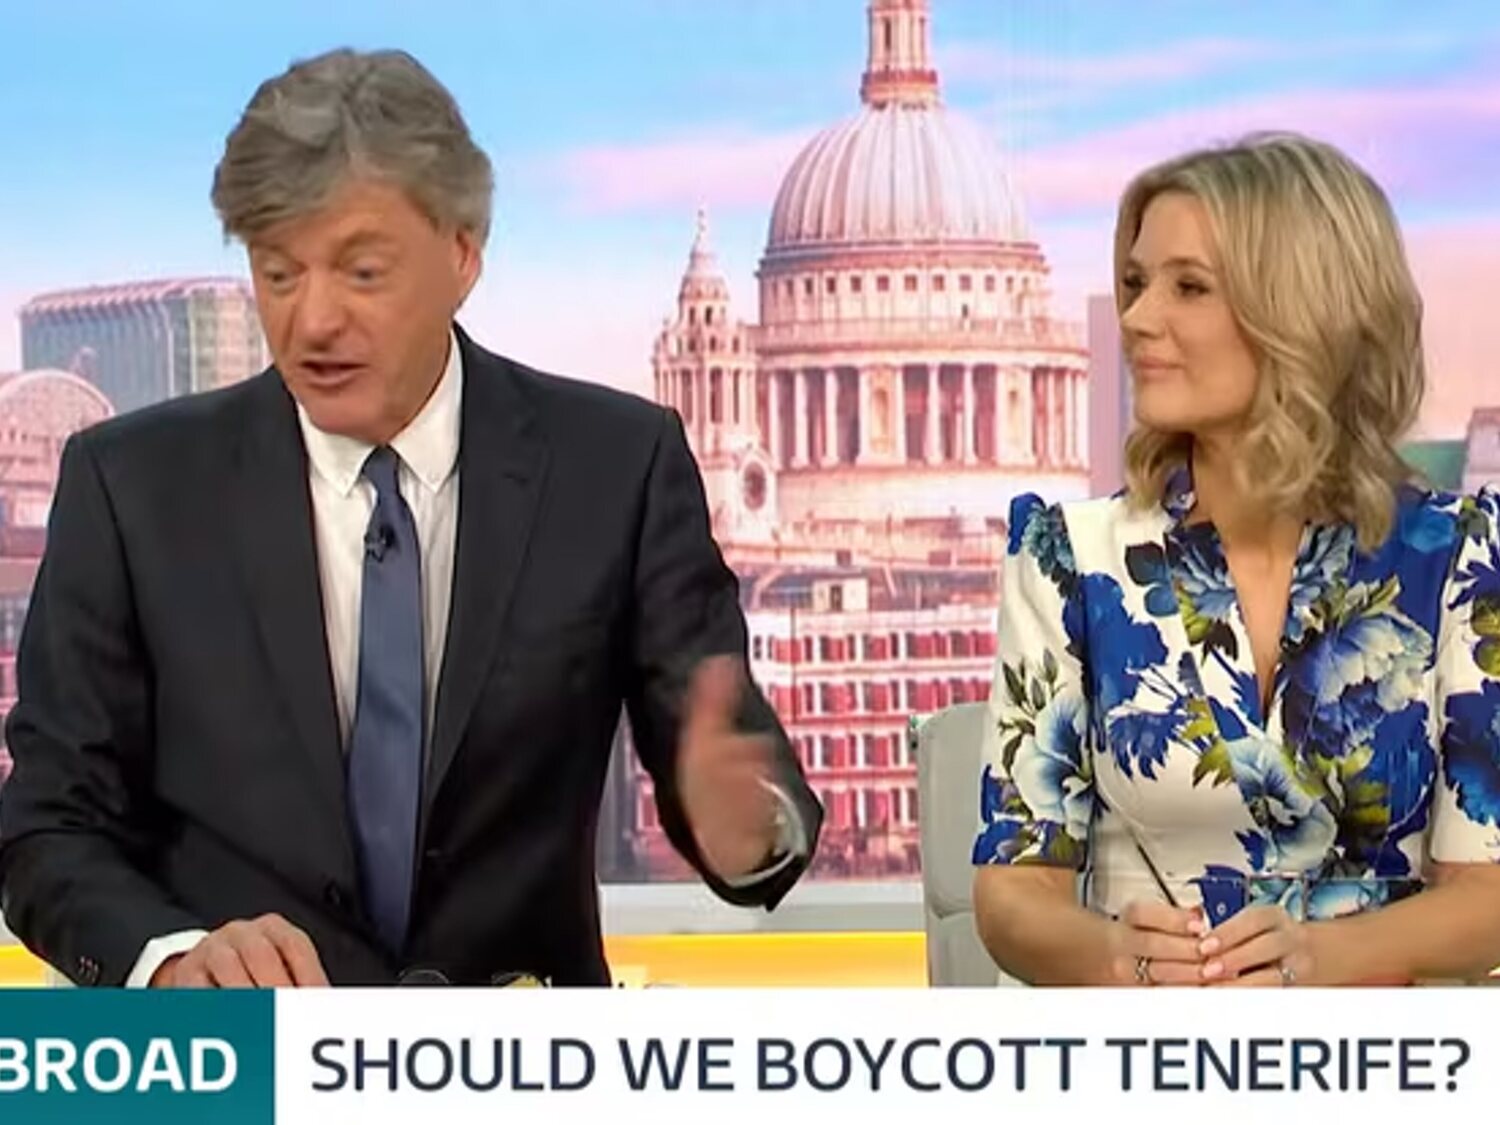 "¿Deberíamos boicotear Tenerife?": la polémica pregunta de una televisión británica